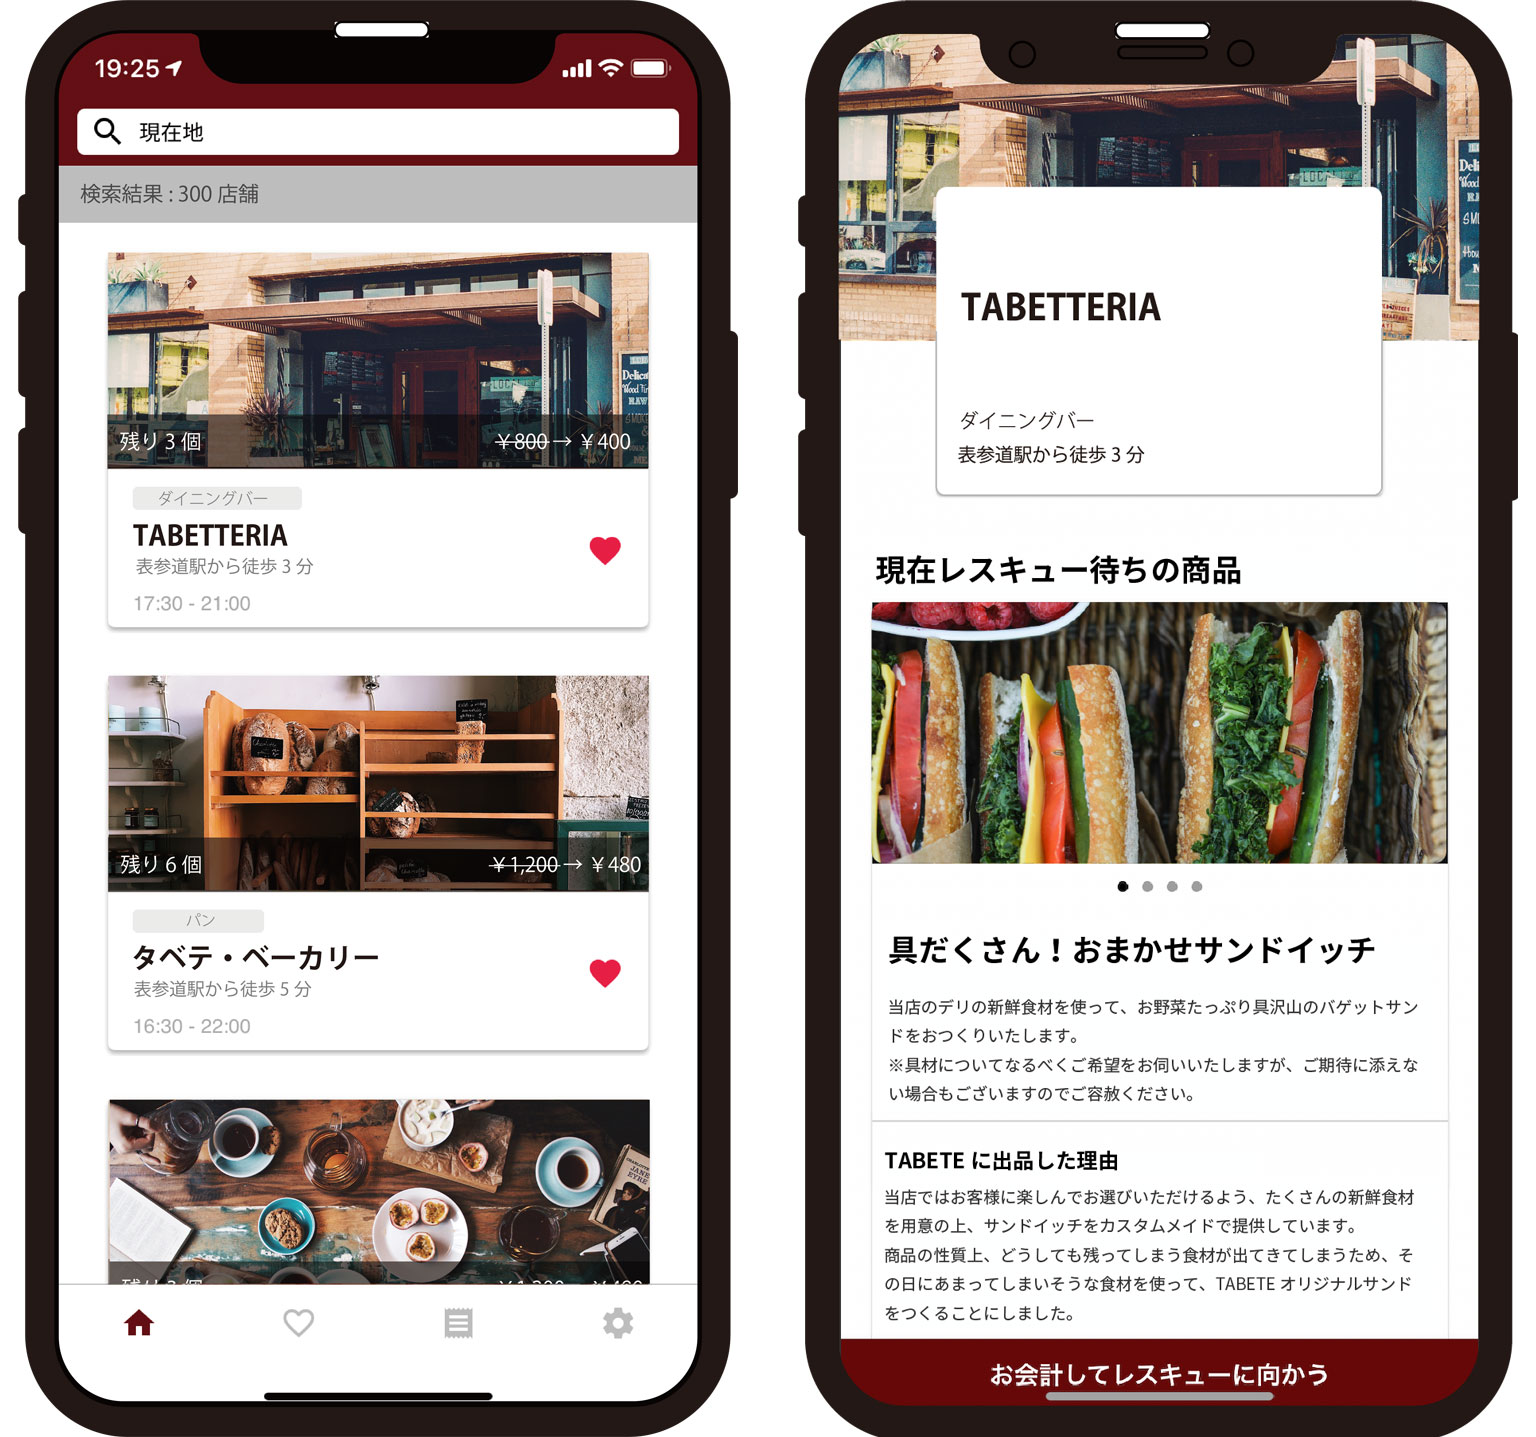 TABETEアプリの店舗一覧画面・店舗詳細画面